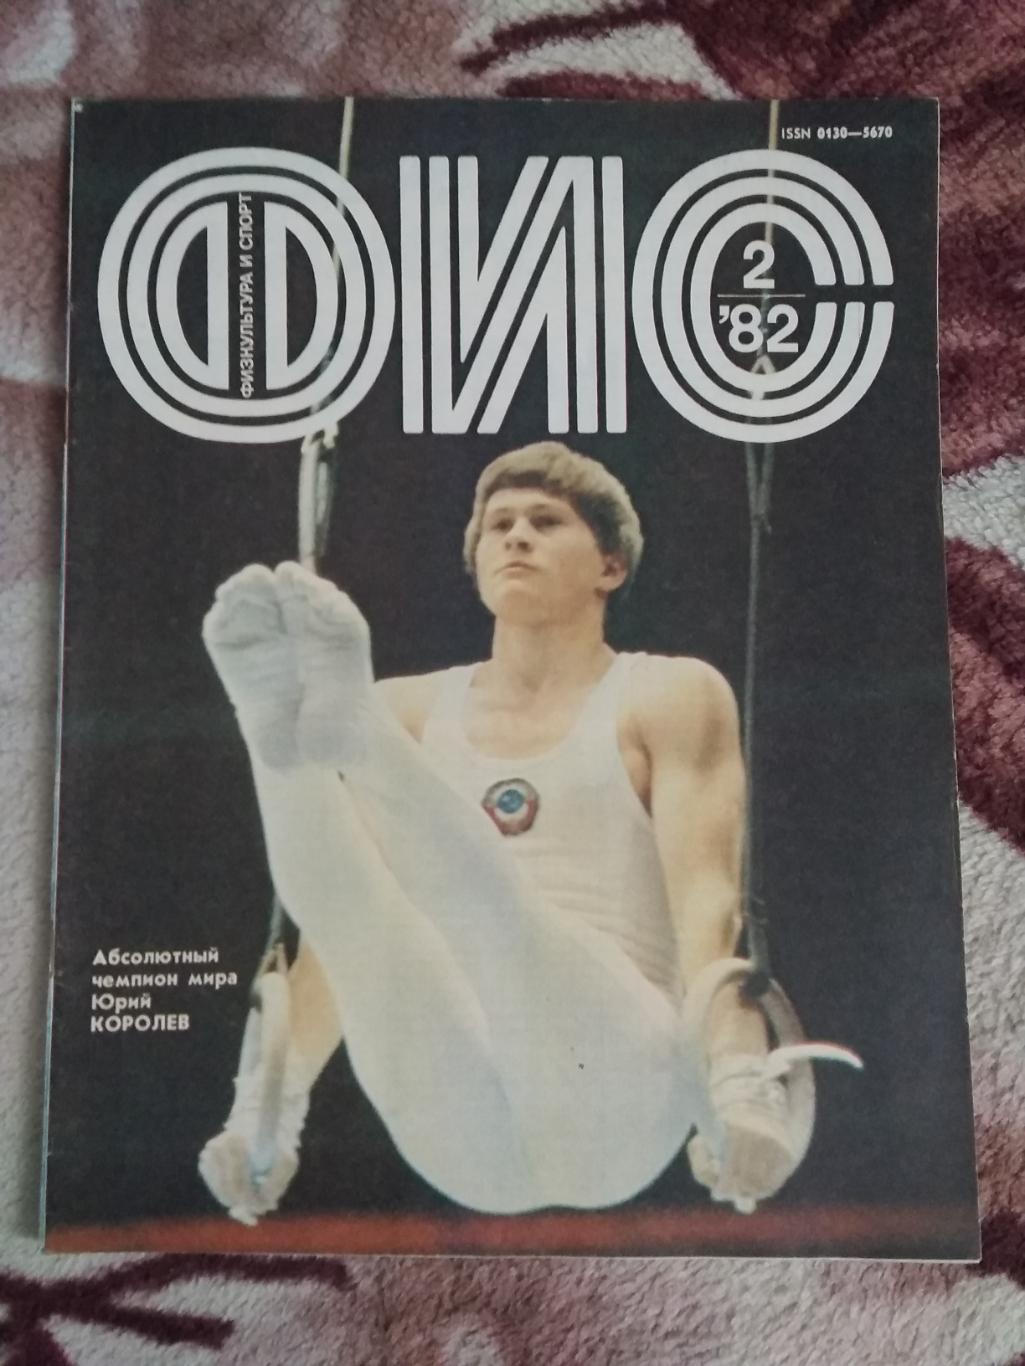 Журнал.Физкультура и спорт № 2 1982 г. (ФиС).